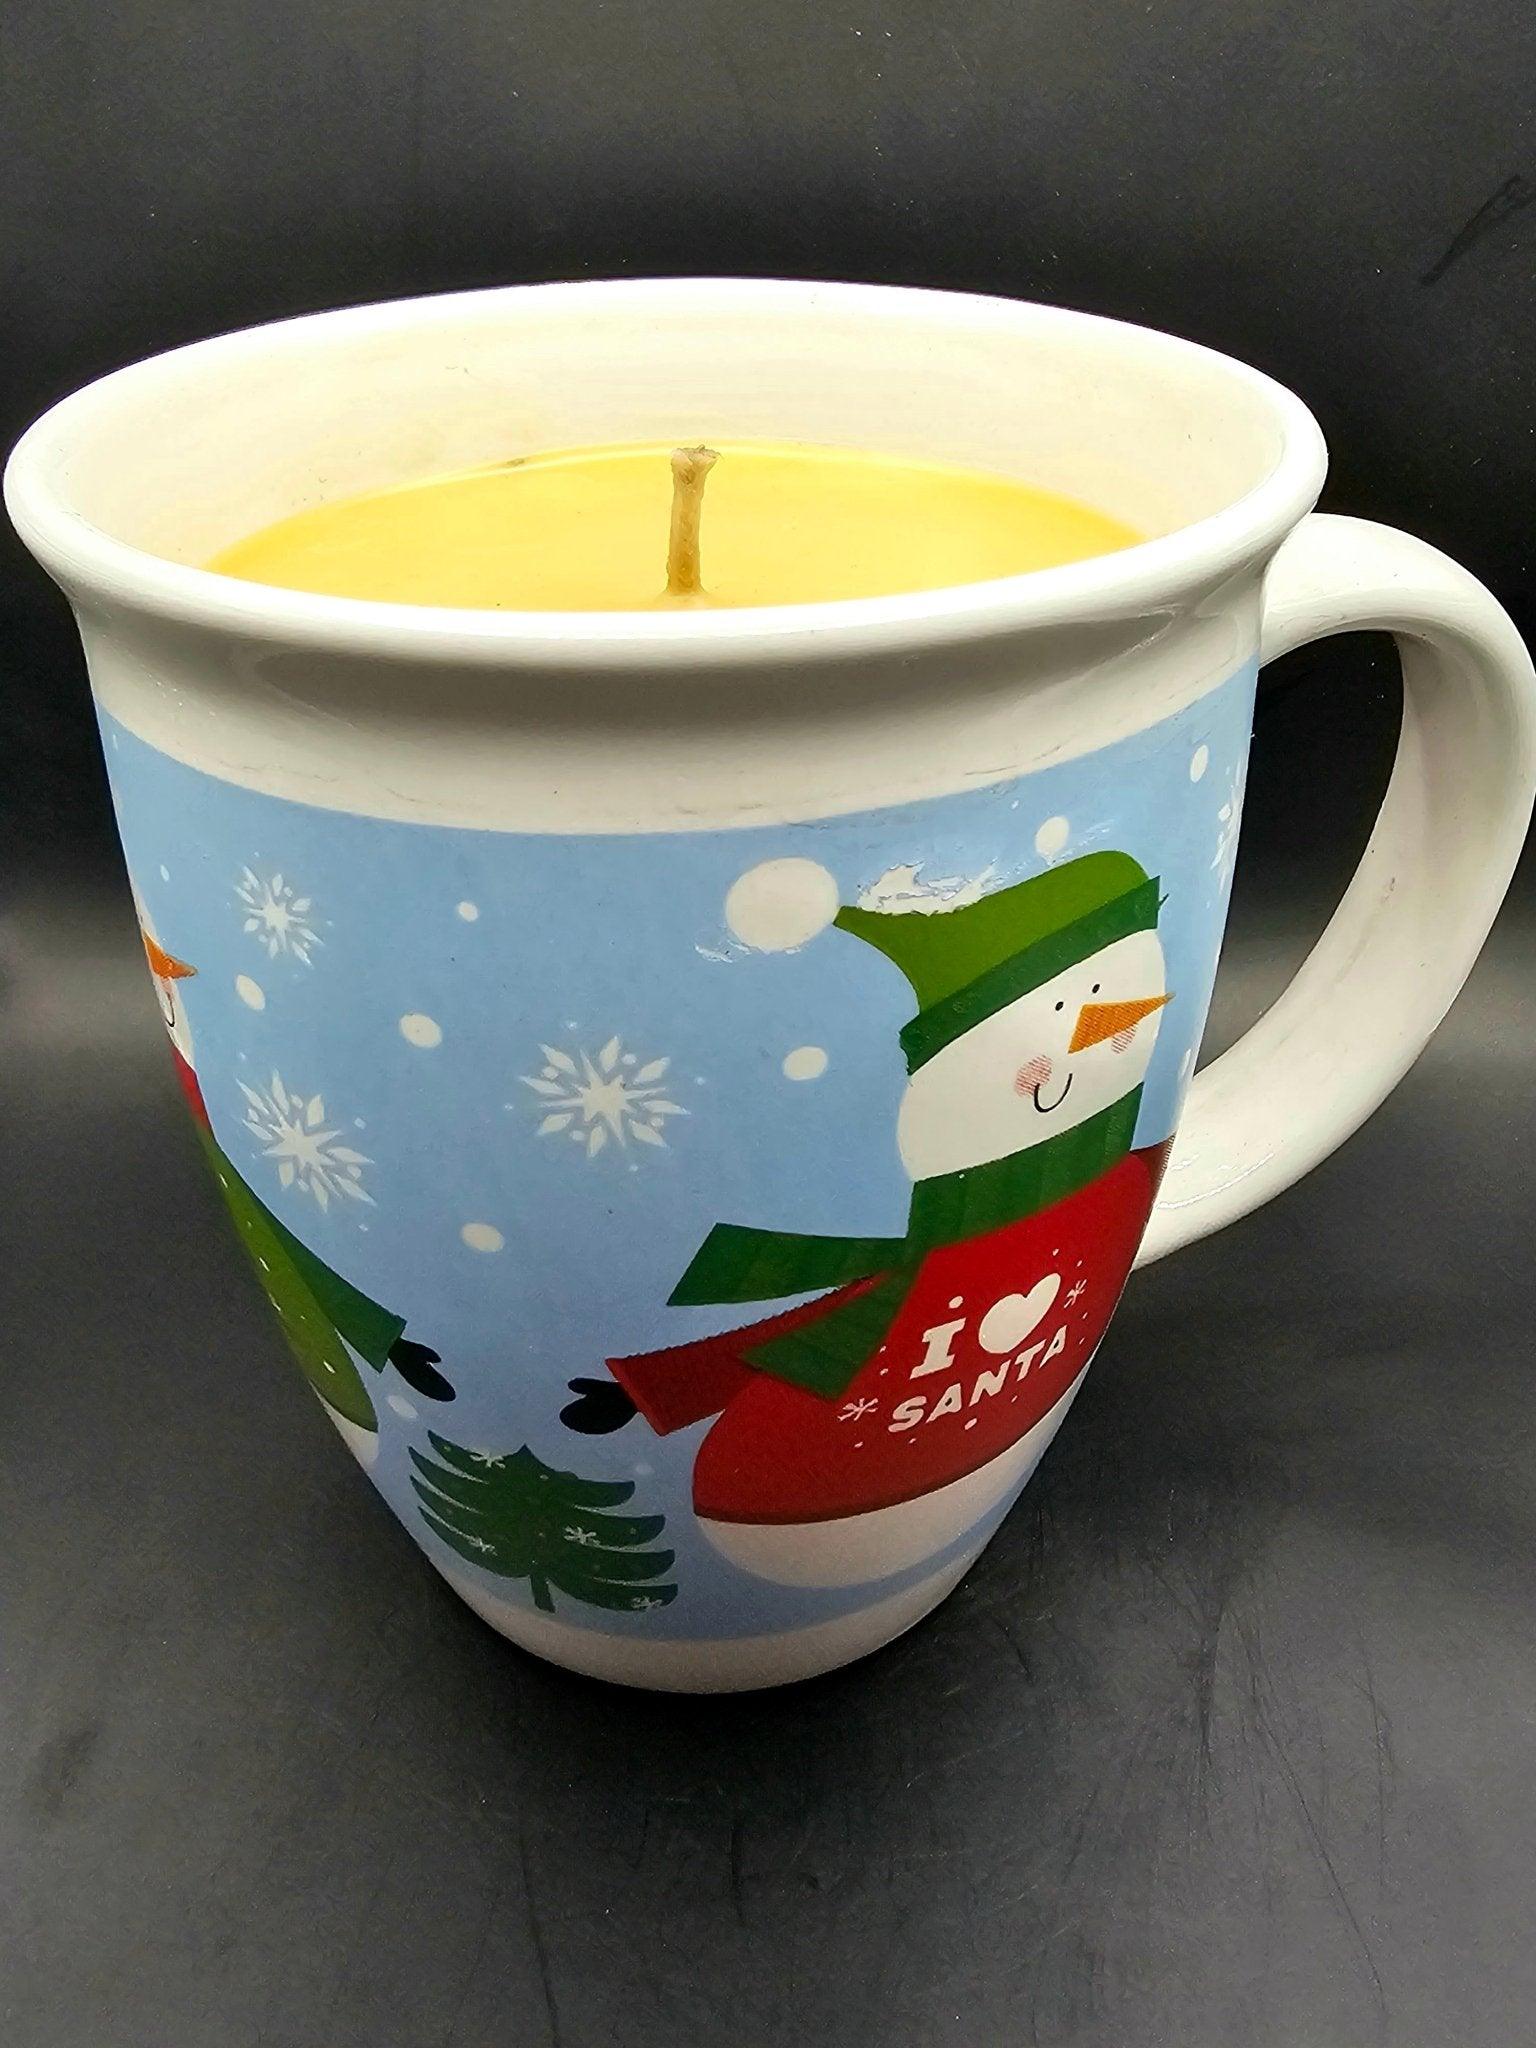 Mug Candle - Creme Brule' Mug Candles Flamingwick Candles & Wax Melts   